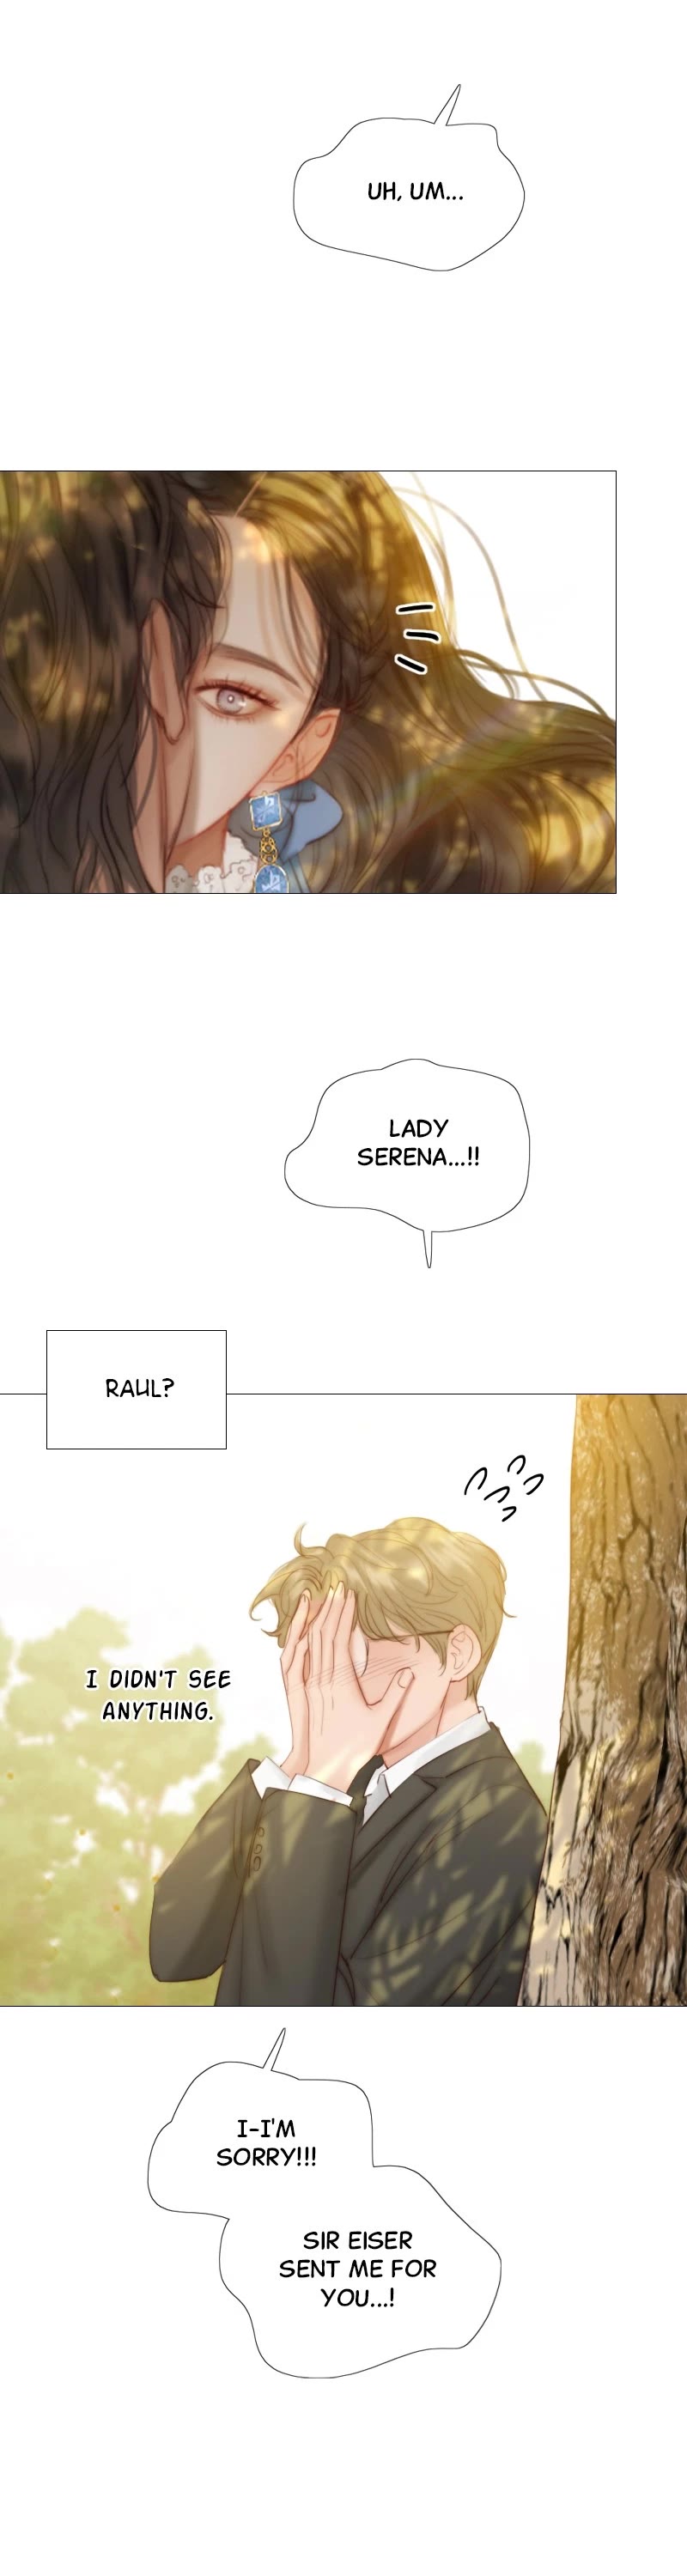 Serena - Page 2